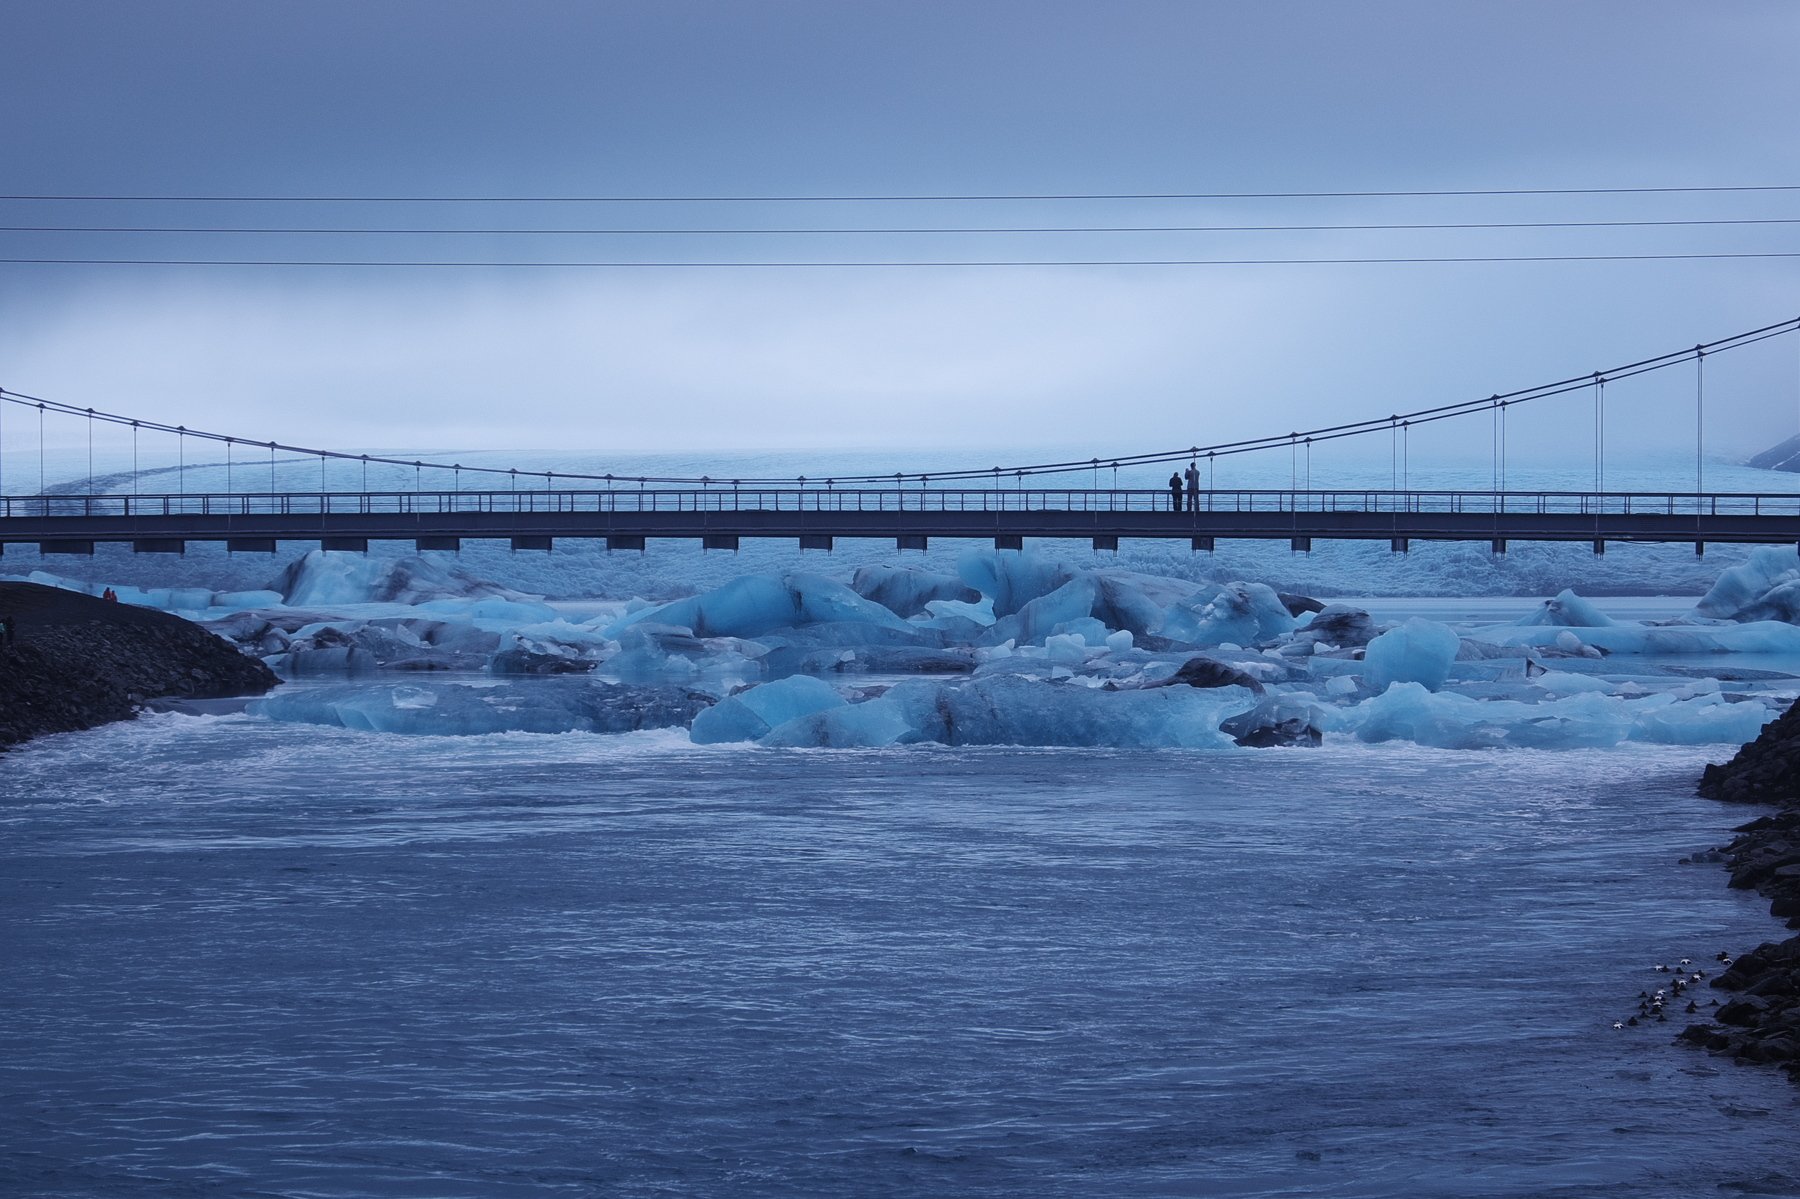 лед, зима, арктика, исландия, мост, север, ice, winter, arctic, iceland, bridge, north, Serg Pechenizhskiy